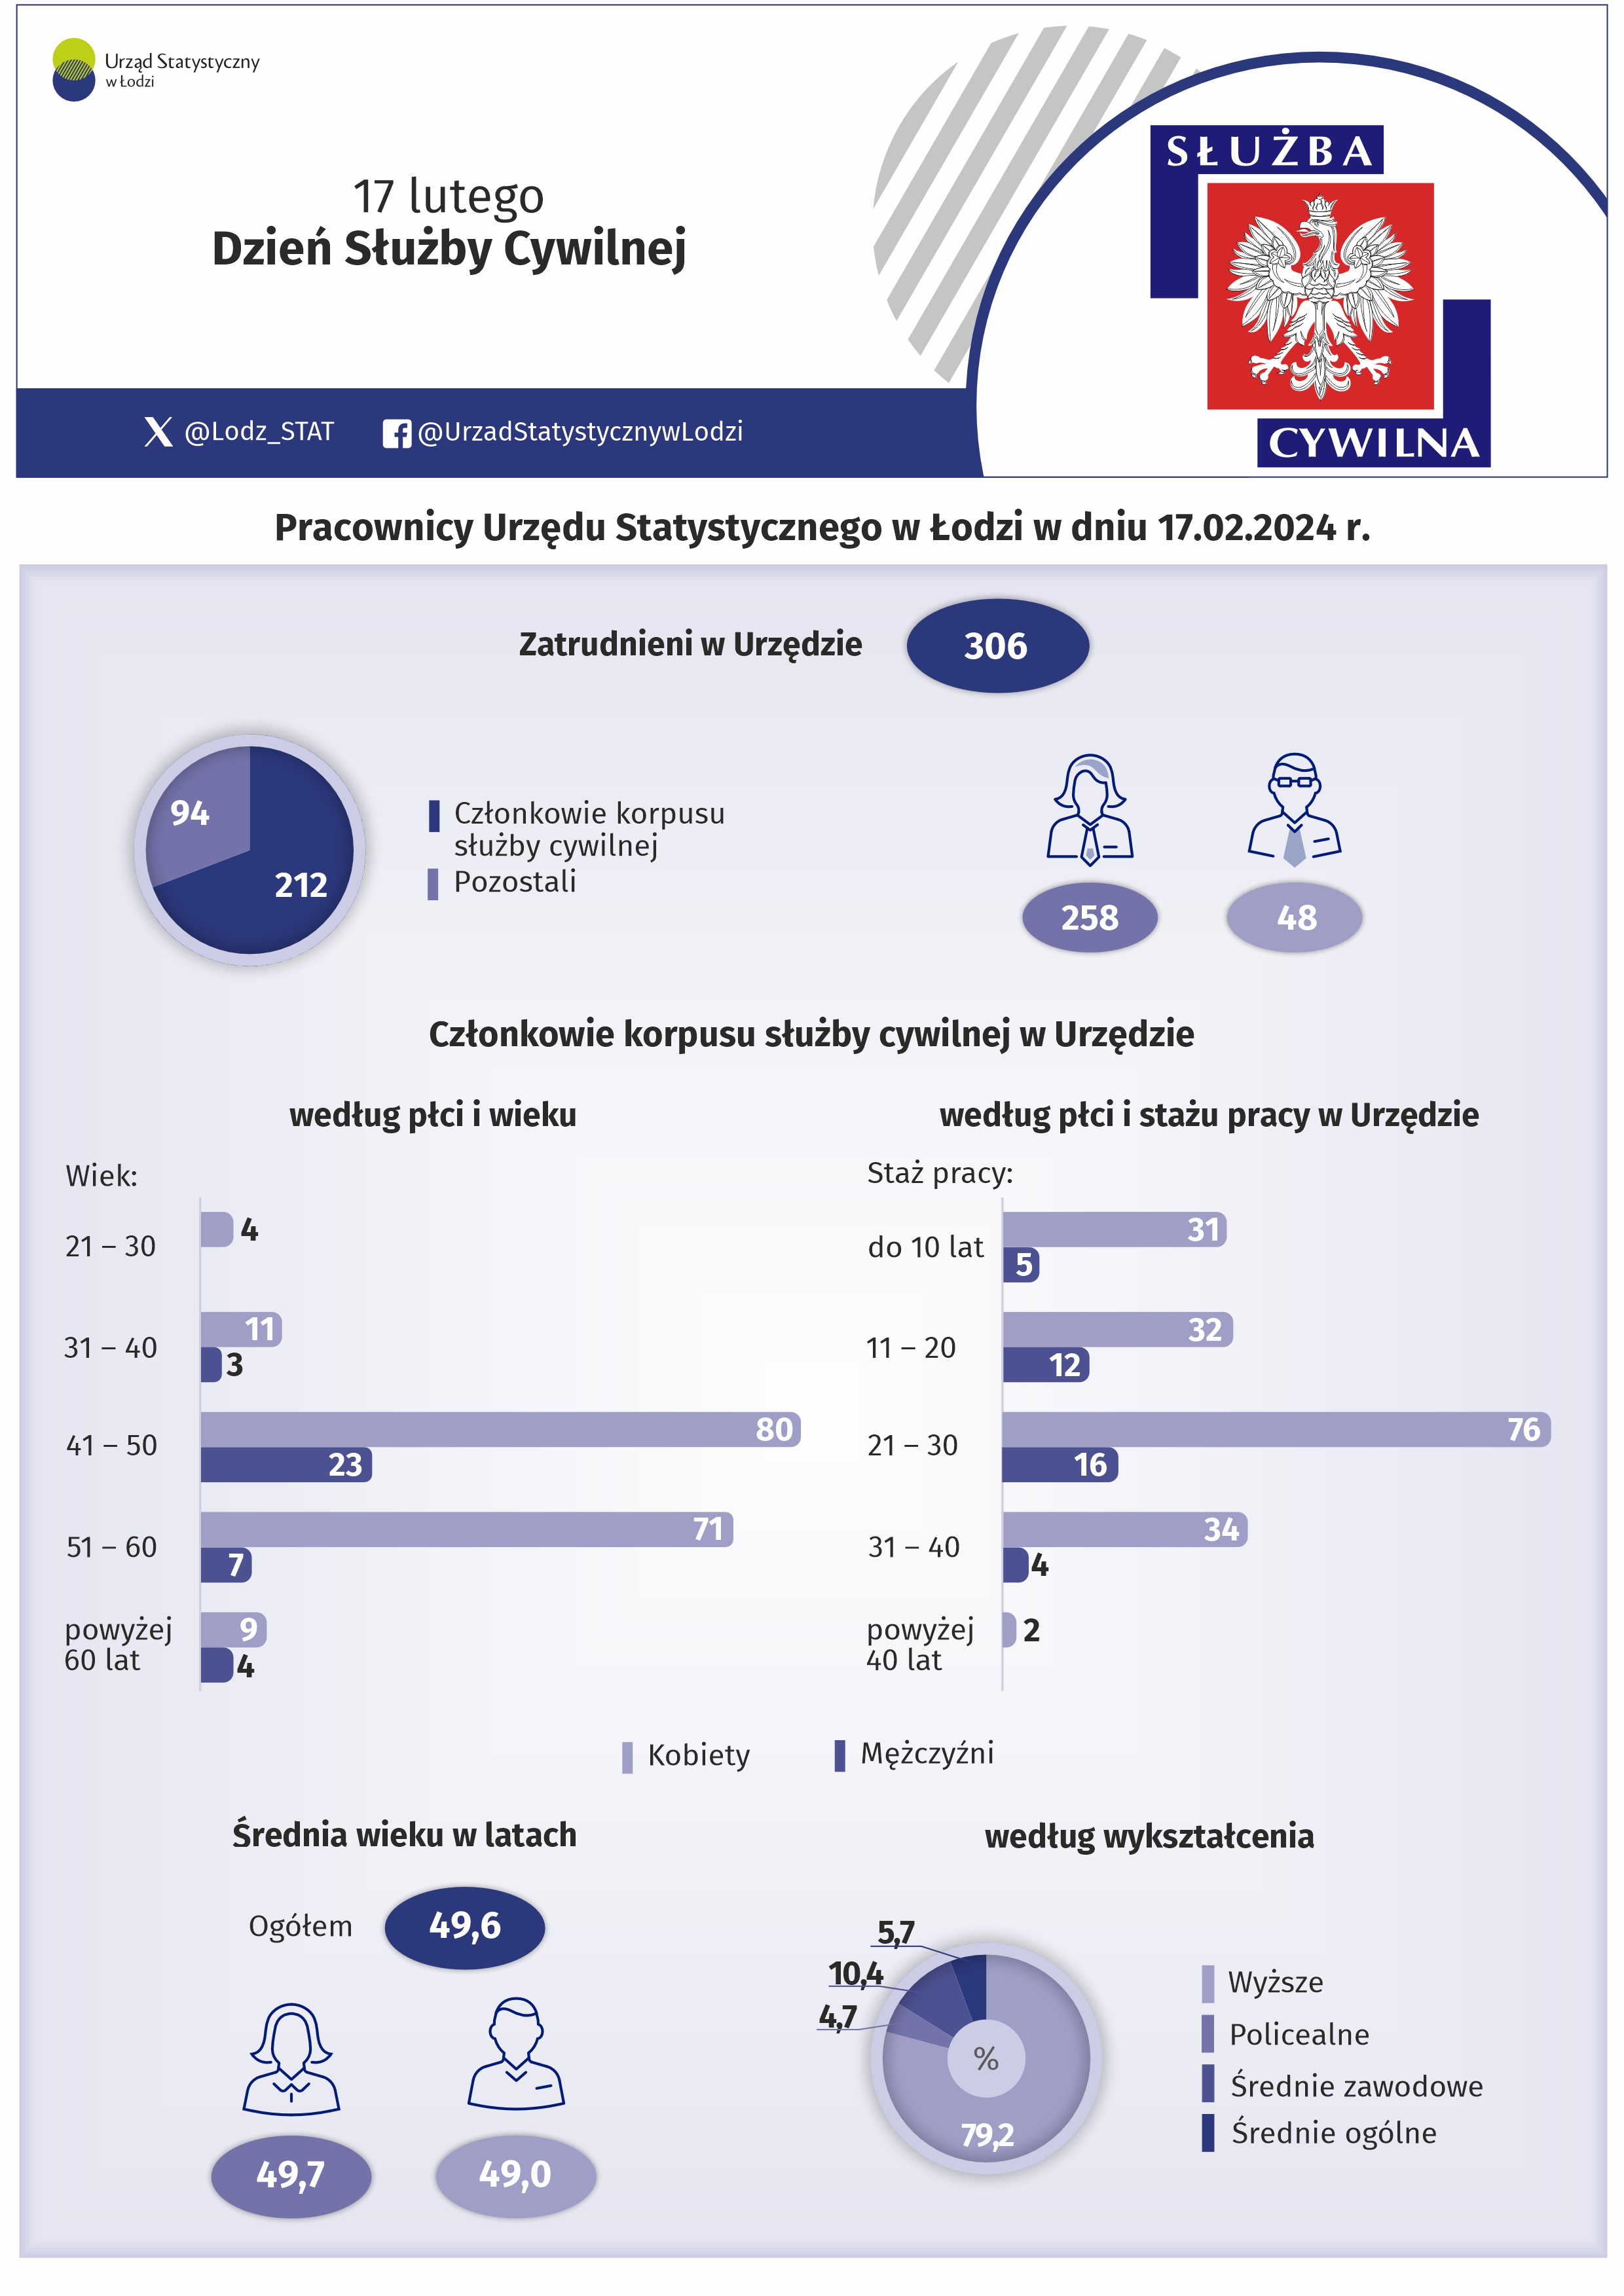 Infografika z okazji Dnia Służby Cywilnej przedstawiająca dane o pracownikach w Urzędzie Statystycznym w Łodzi